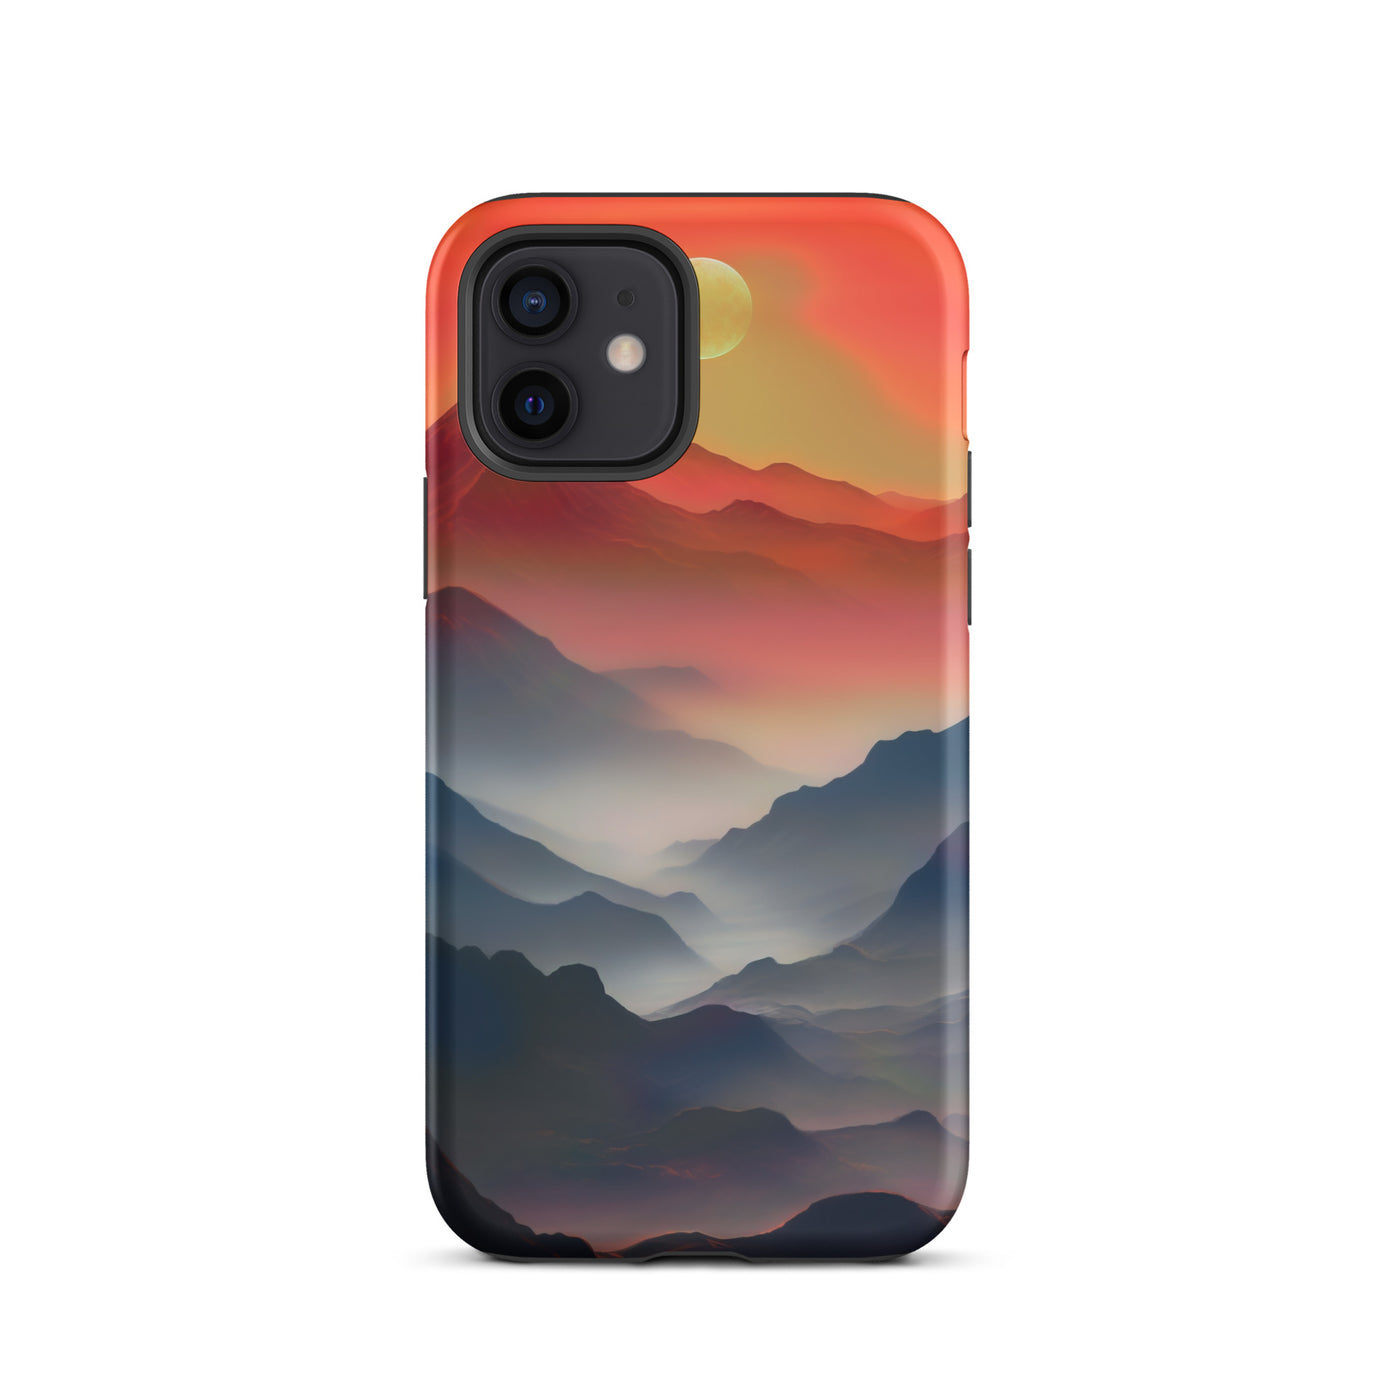 Sonnteruntergang, Gebirge und Nebel - Landschaftsmalerei - iPhone Schutzhülle (robust) berge xxx iPhone 12